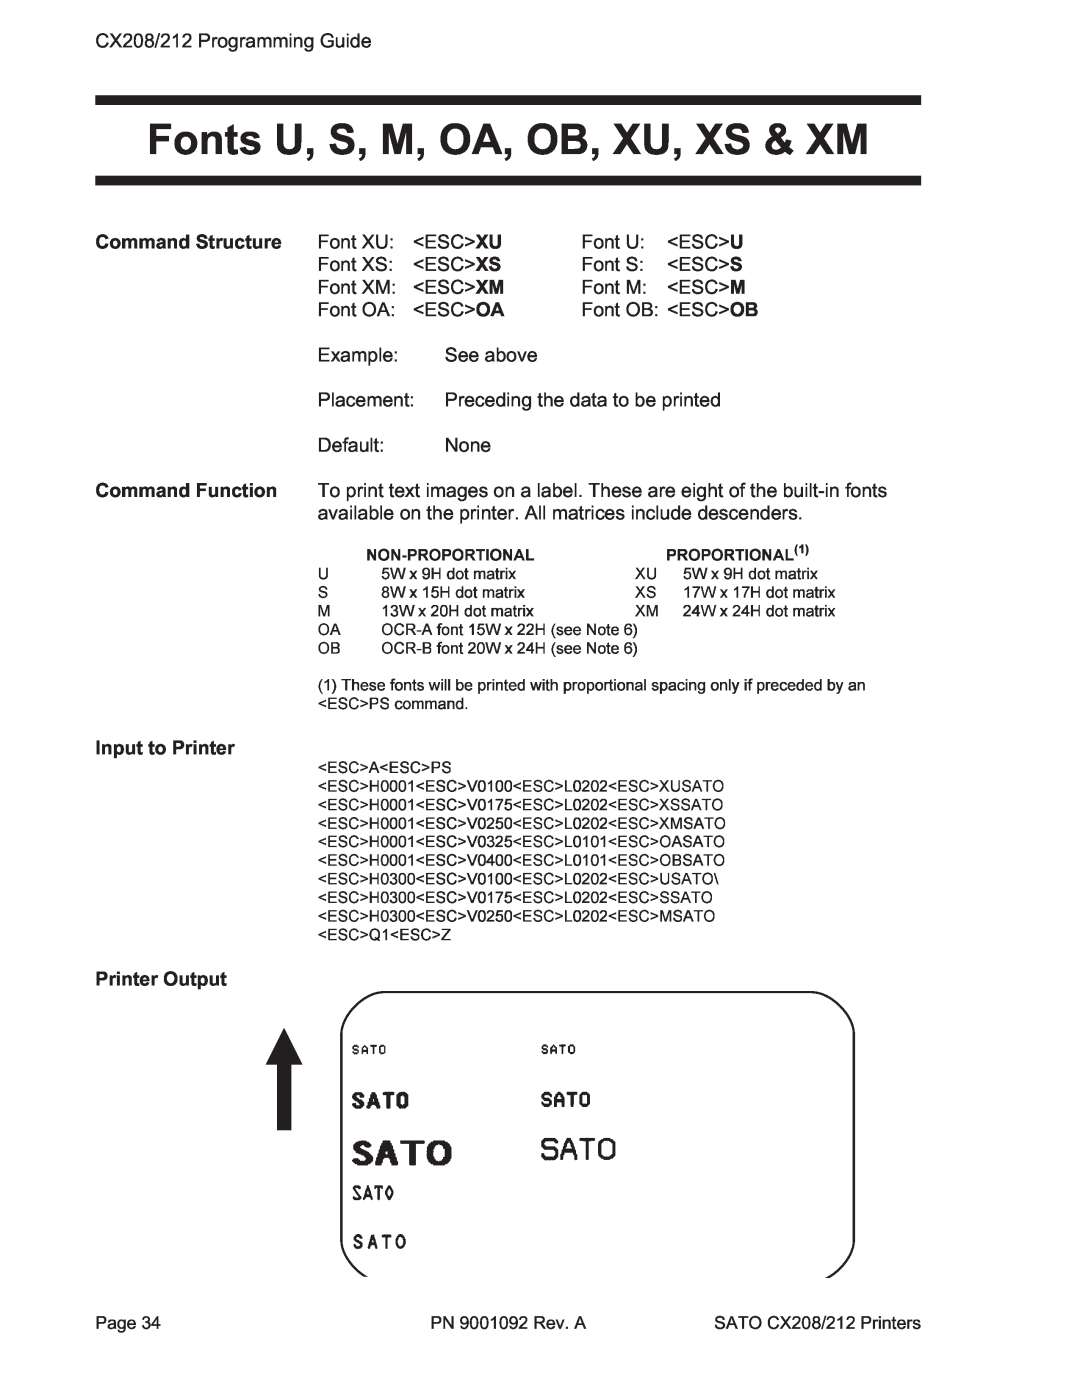 SATO CX208/212 manual Fonts U, S, M, OA, OB, XU, XS & XM, H0300ESCV0125140322517500ESCL0202ESC11UXMSATOUB, ESCQ1ESCZ 